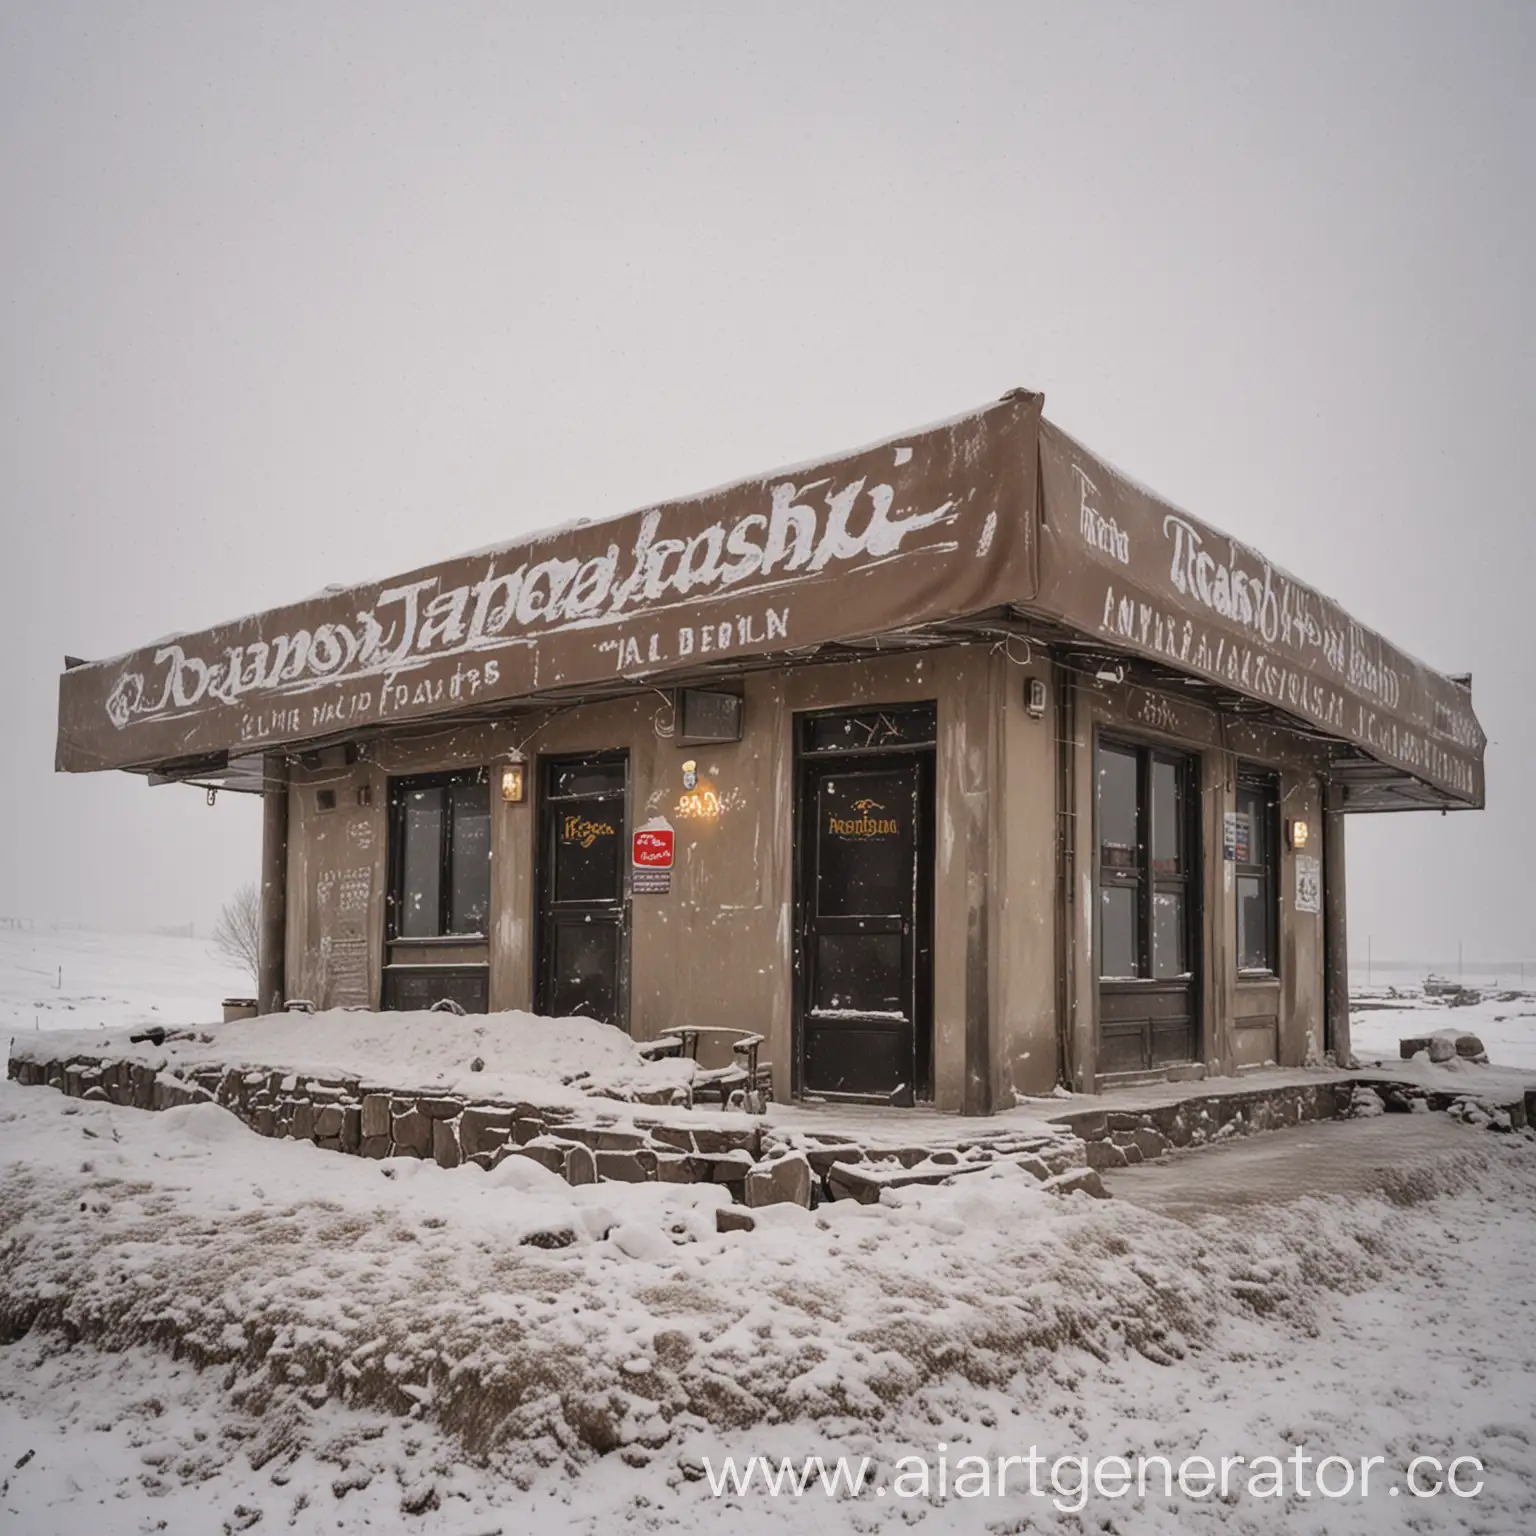 Luxury-Restaurant-Traxashu-in-Snowy-Winter-Setting